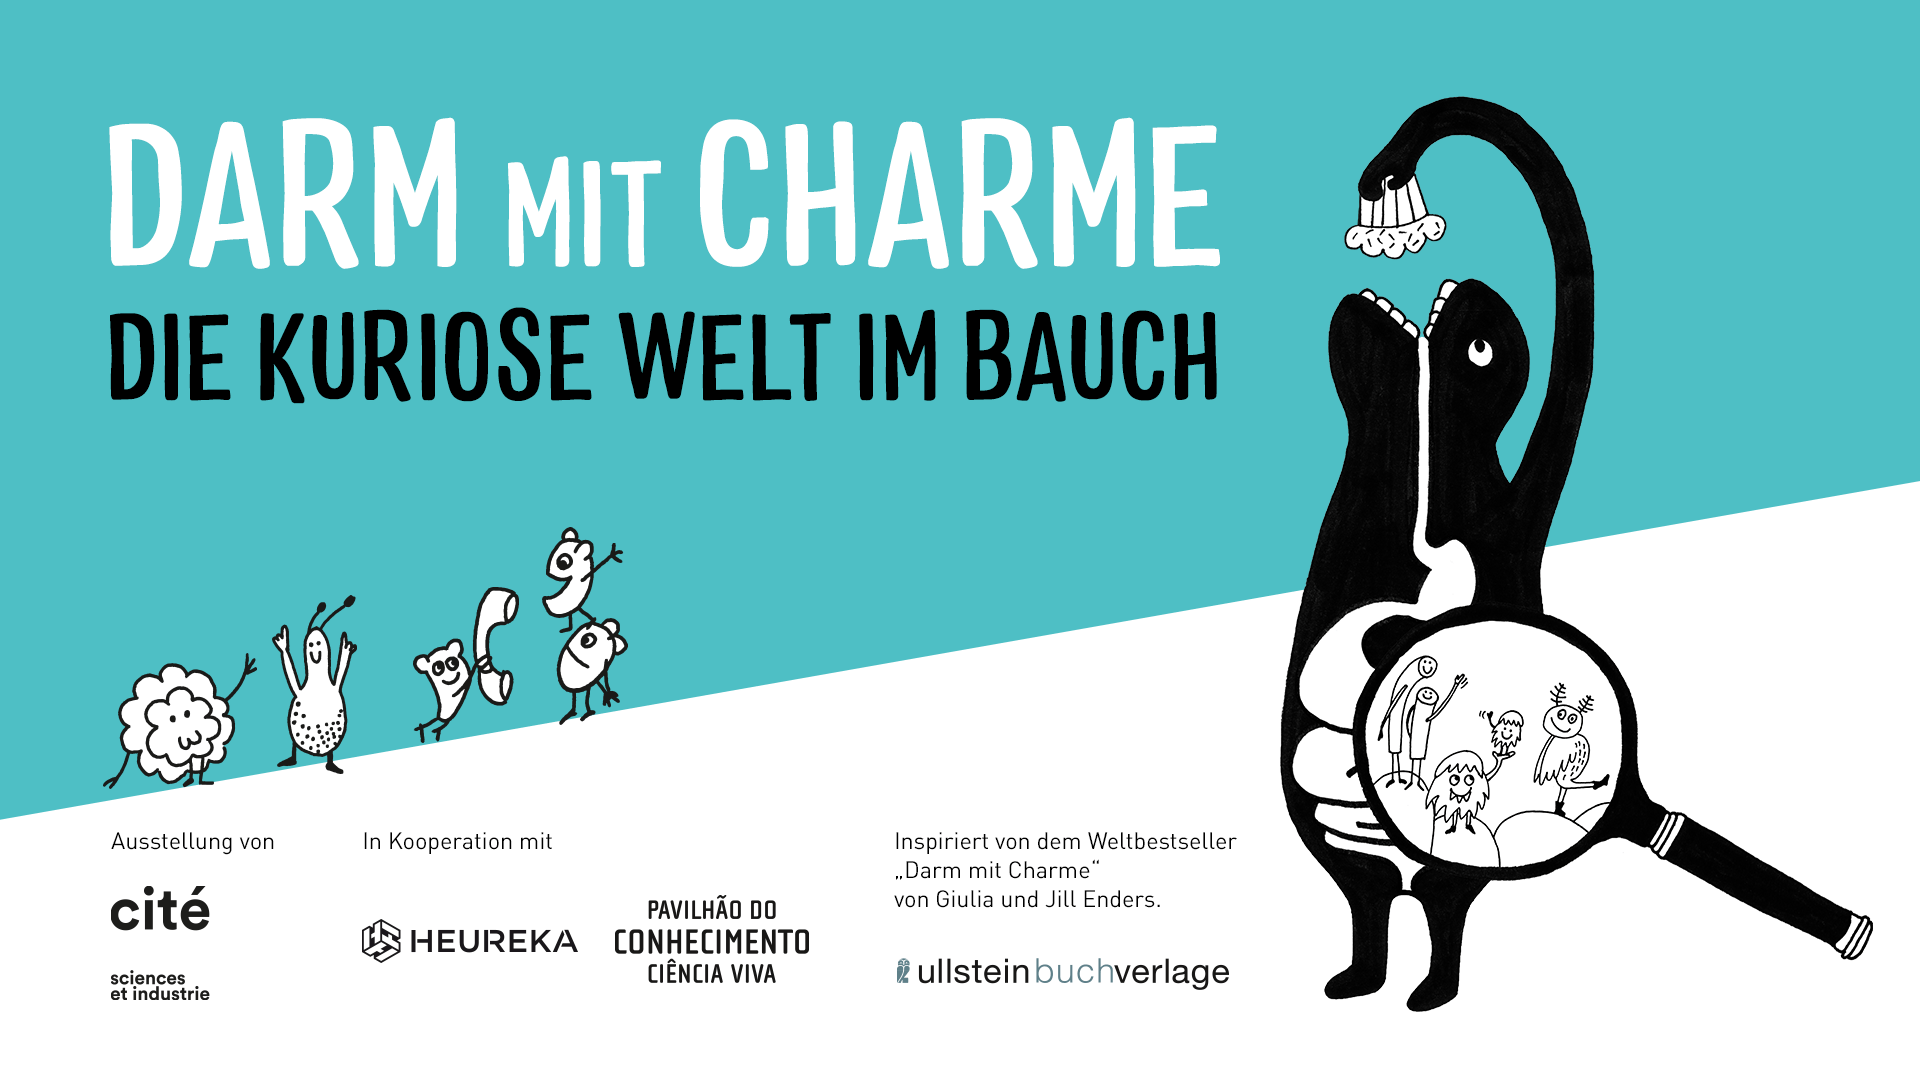 Darm mit Charme – die kuriose Welt im Bauch mit Illustration